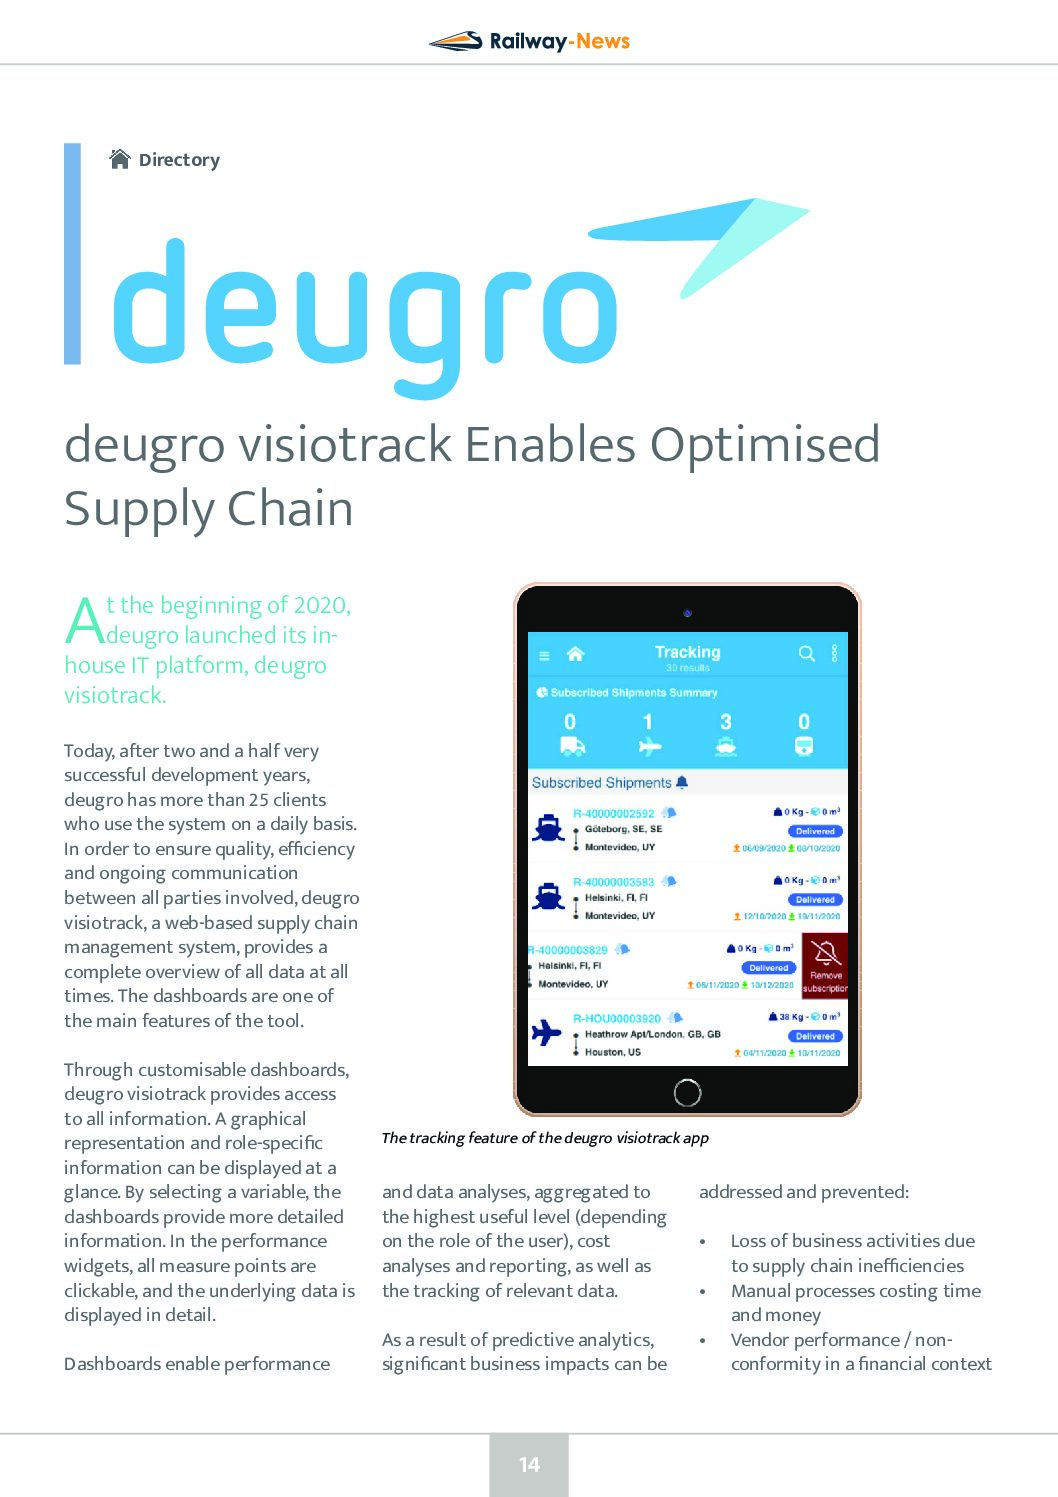 deugro visiotrack Enables Optimised Supply Chain